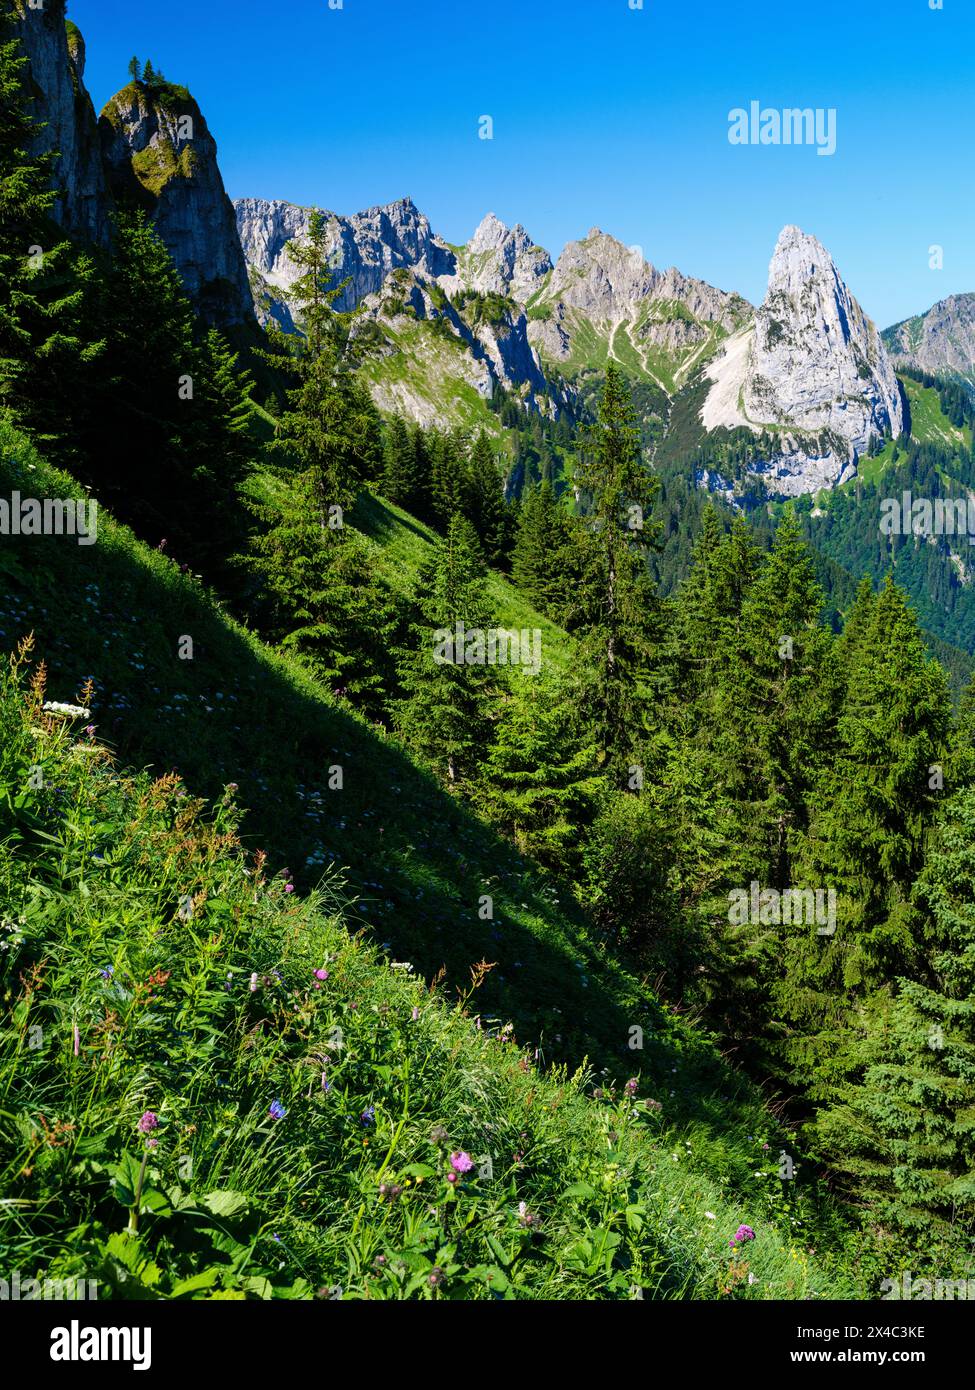 Vista verso il monte Geiselstein. Parco naturale delle Alpi Ammergau (Ammergau Alpen) nelle Alpi calcaree settentrionali dell'alta Baviera, Germania. Foto Stock